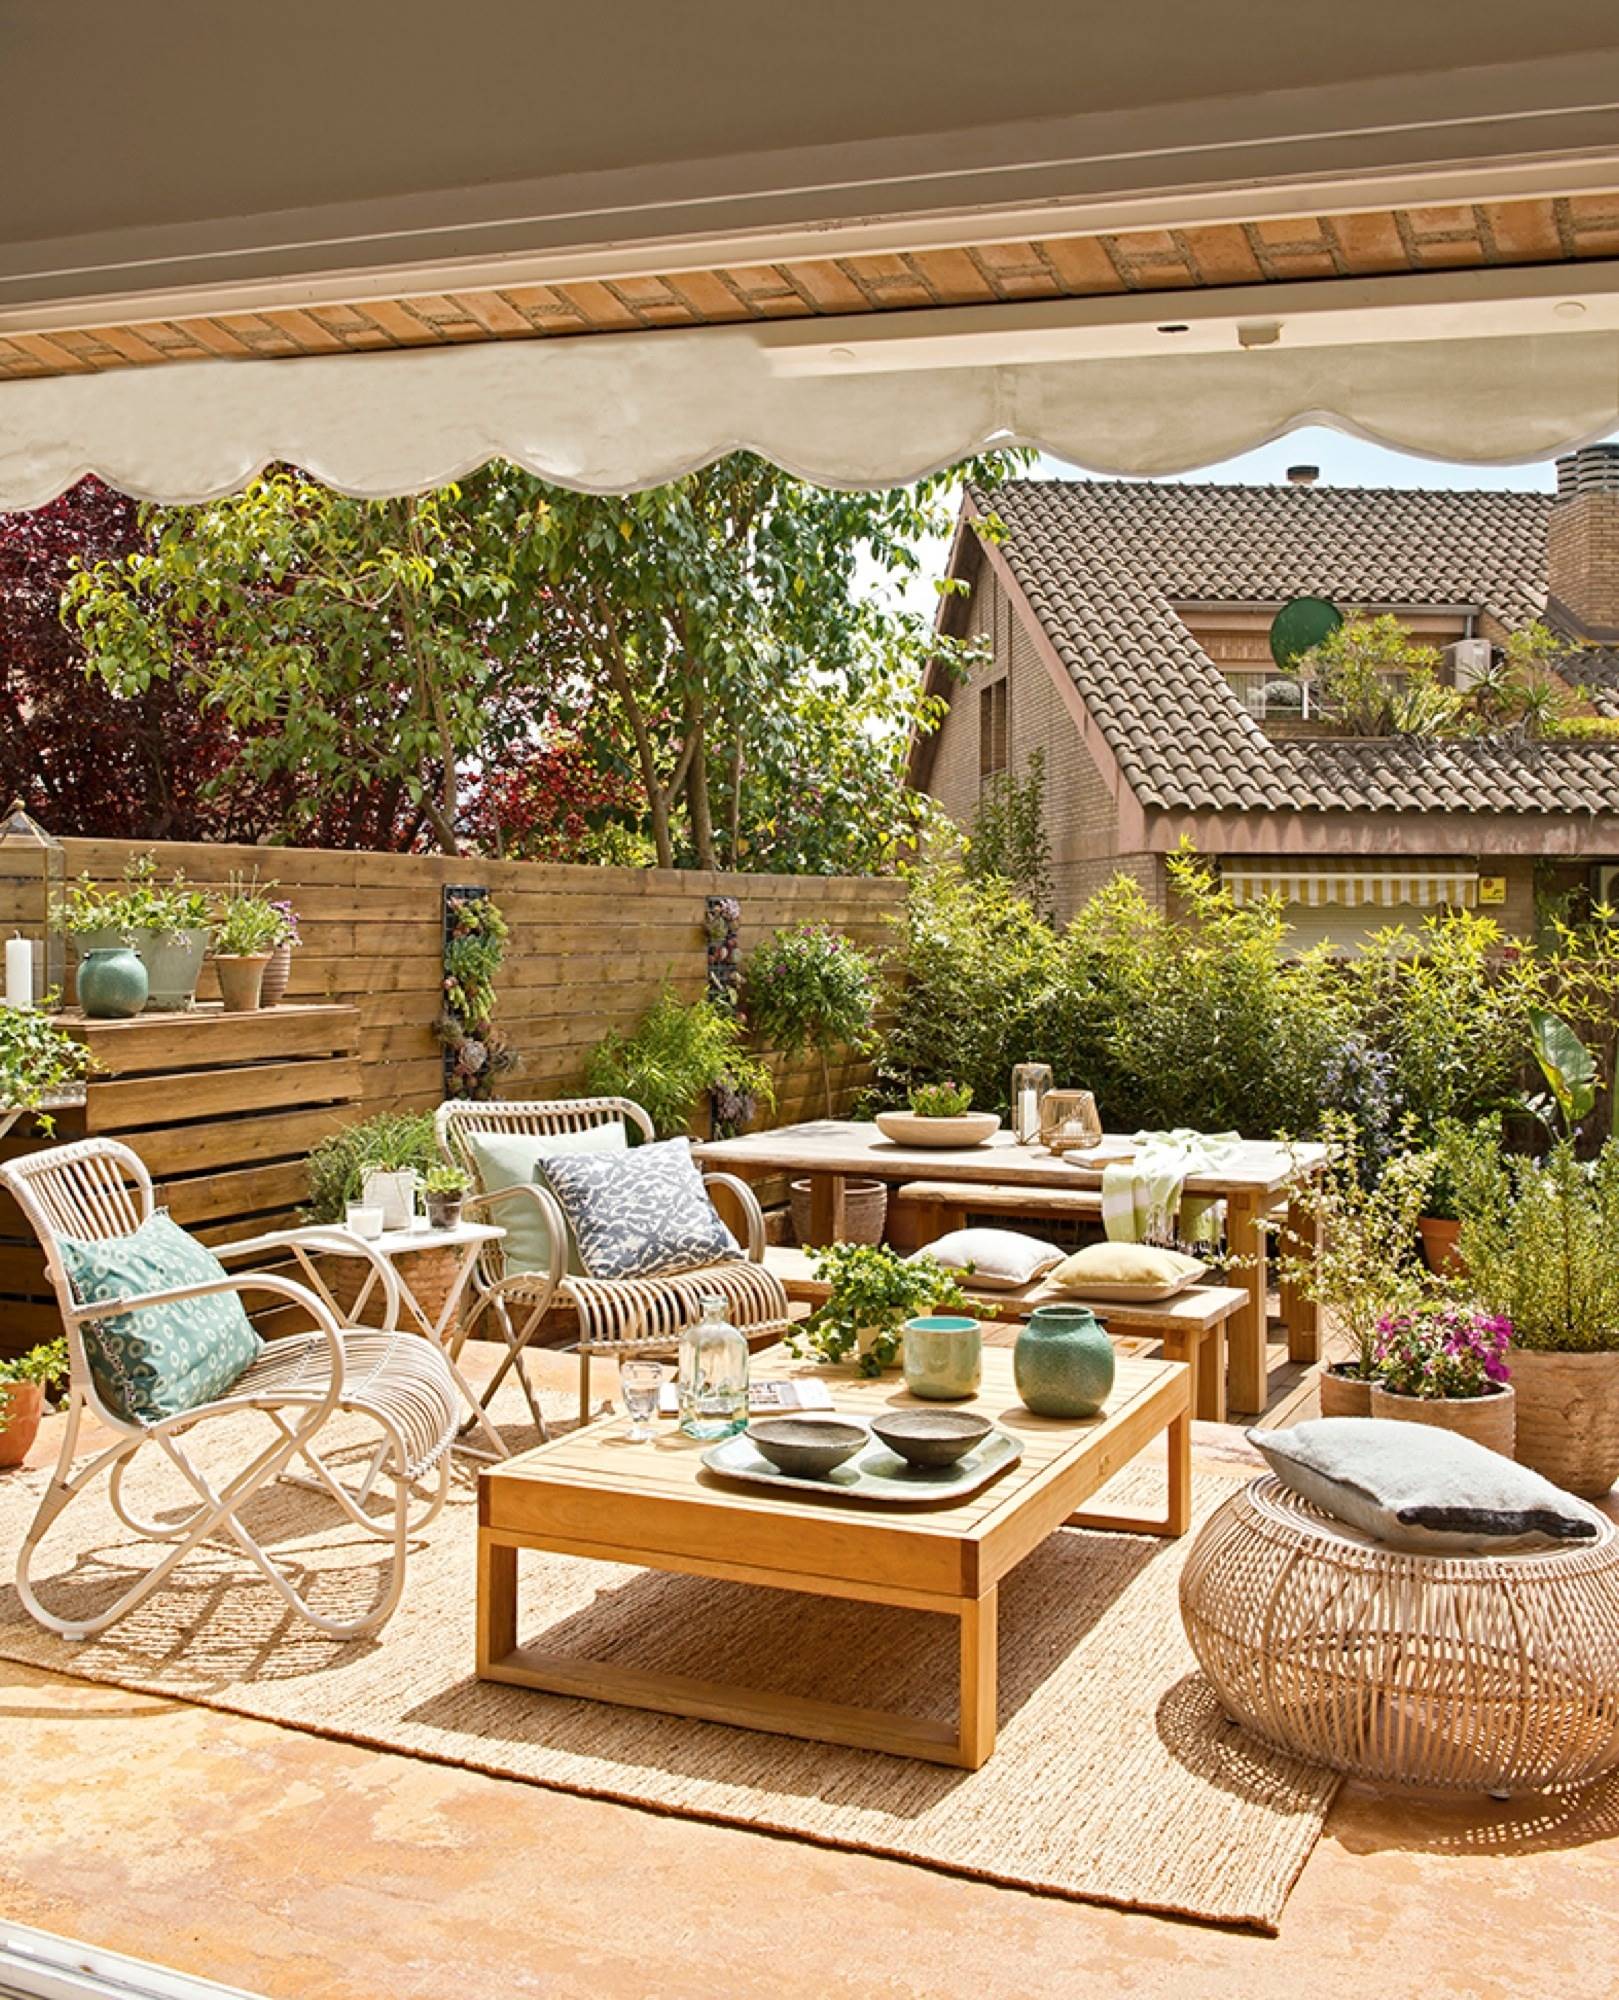 Terraza con muebles de madera y fibra natural, plantas y dos niveles 406470